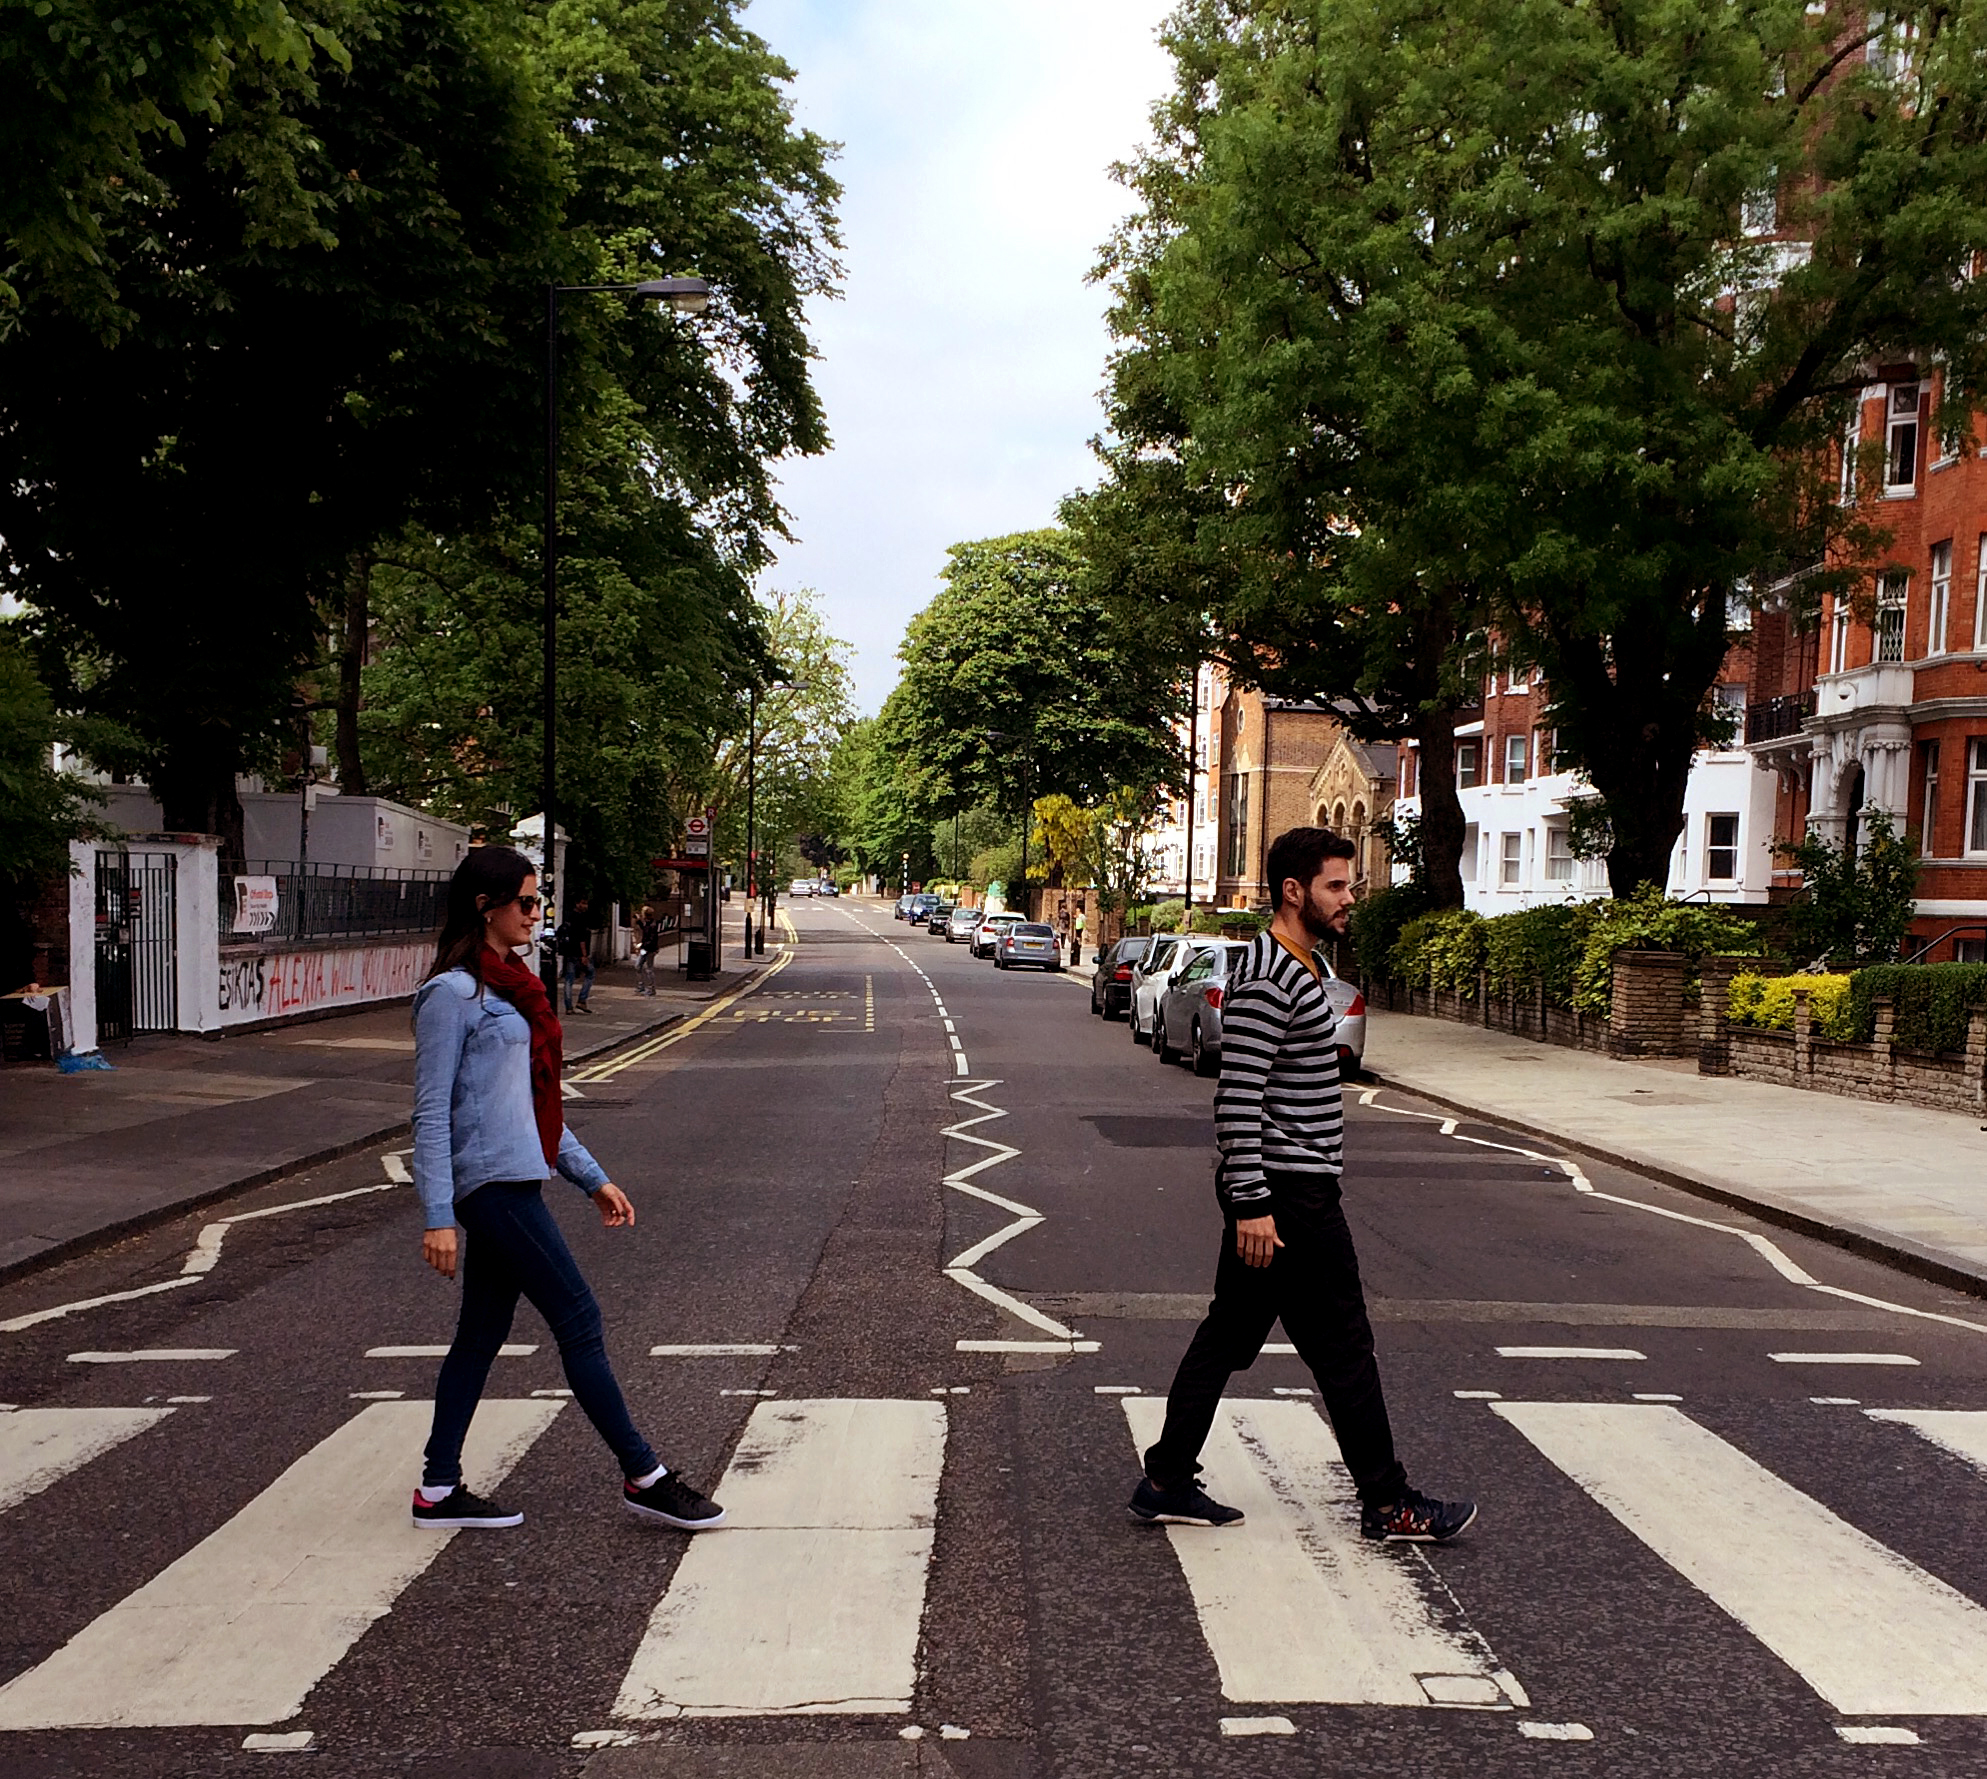 Fomos até a rua famosa dos Beatles, a Abbey Road, local do estúdio onde eles gravaram, muito legal.